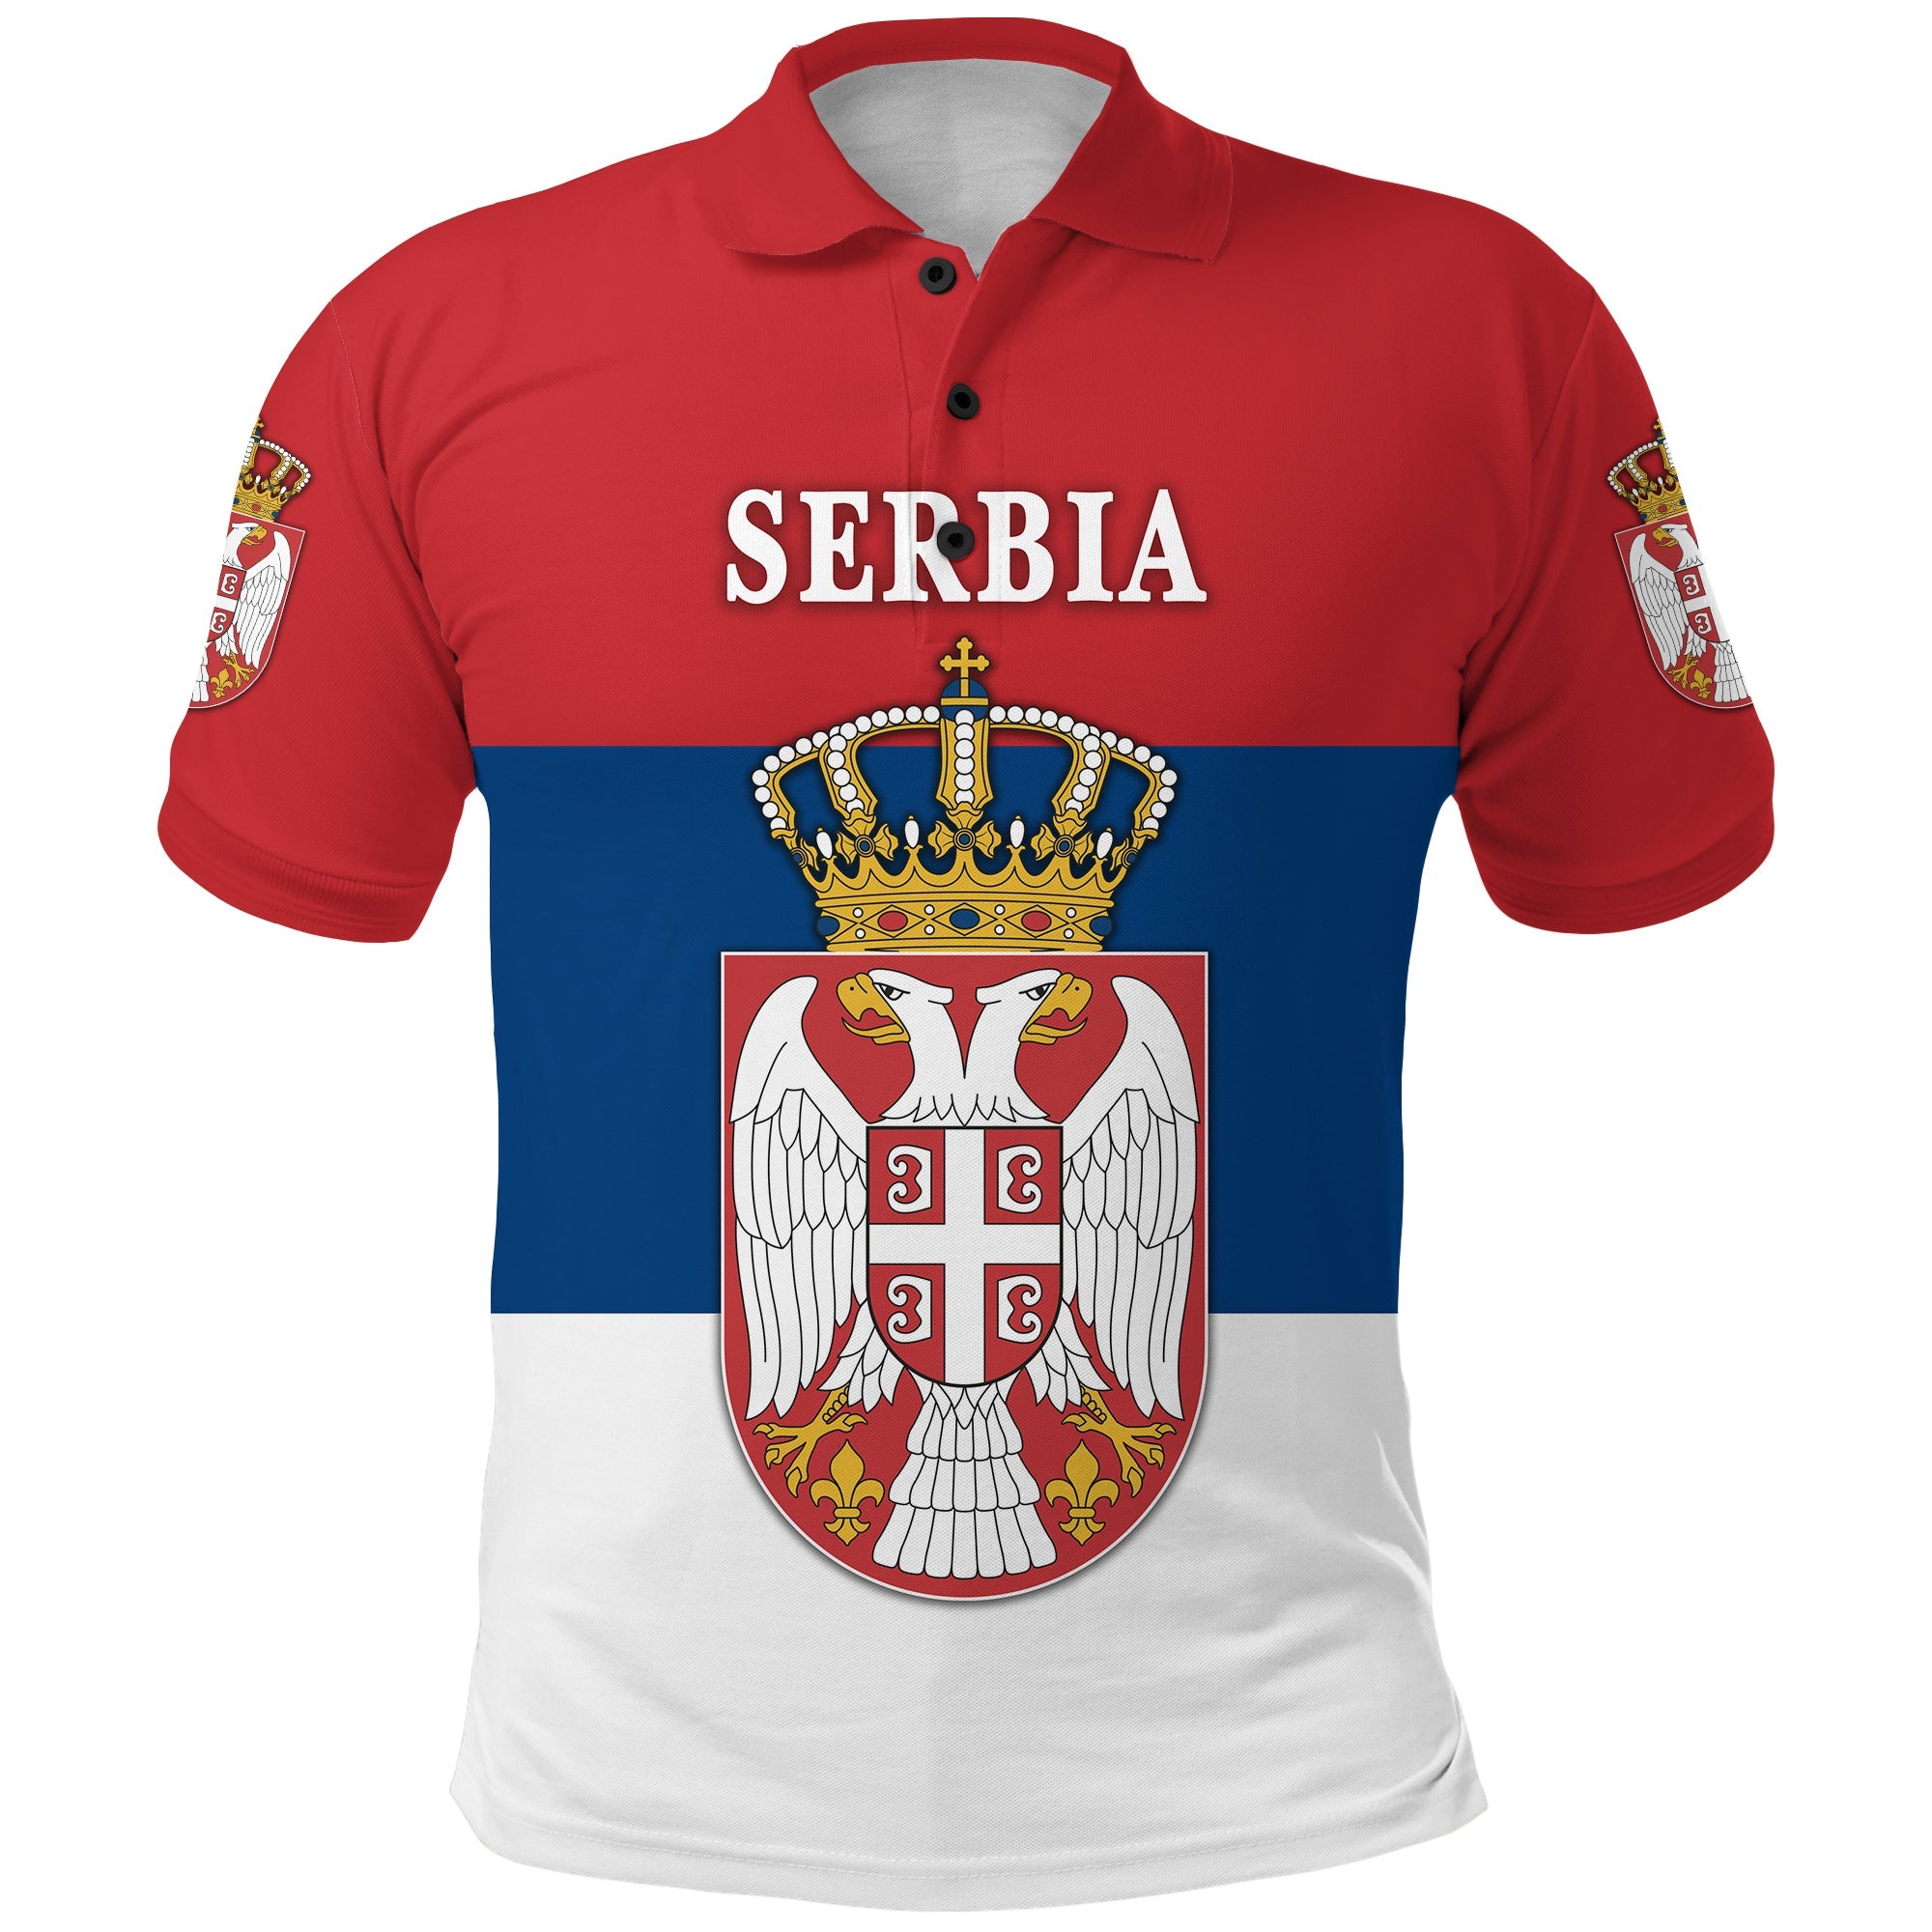 serbia-polo-shirt-srbija-flag-style